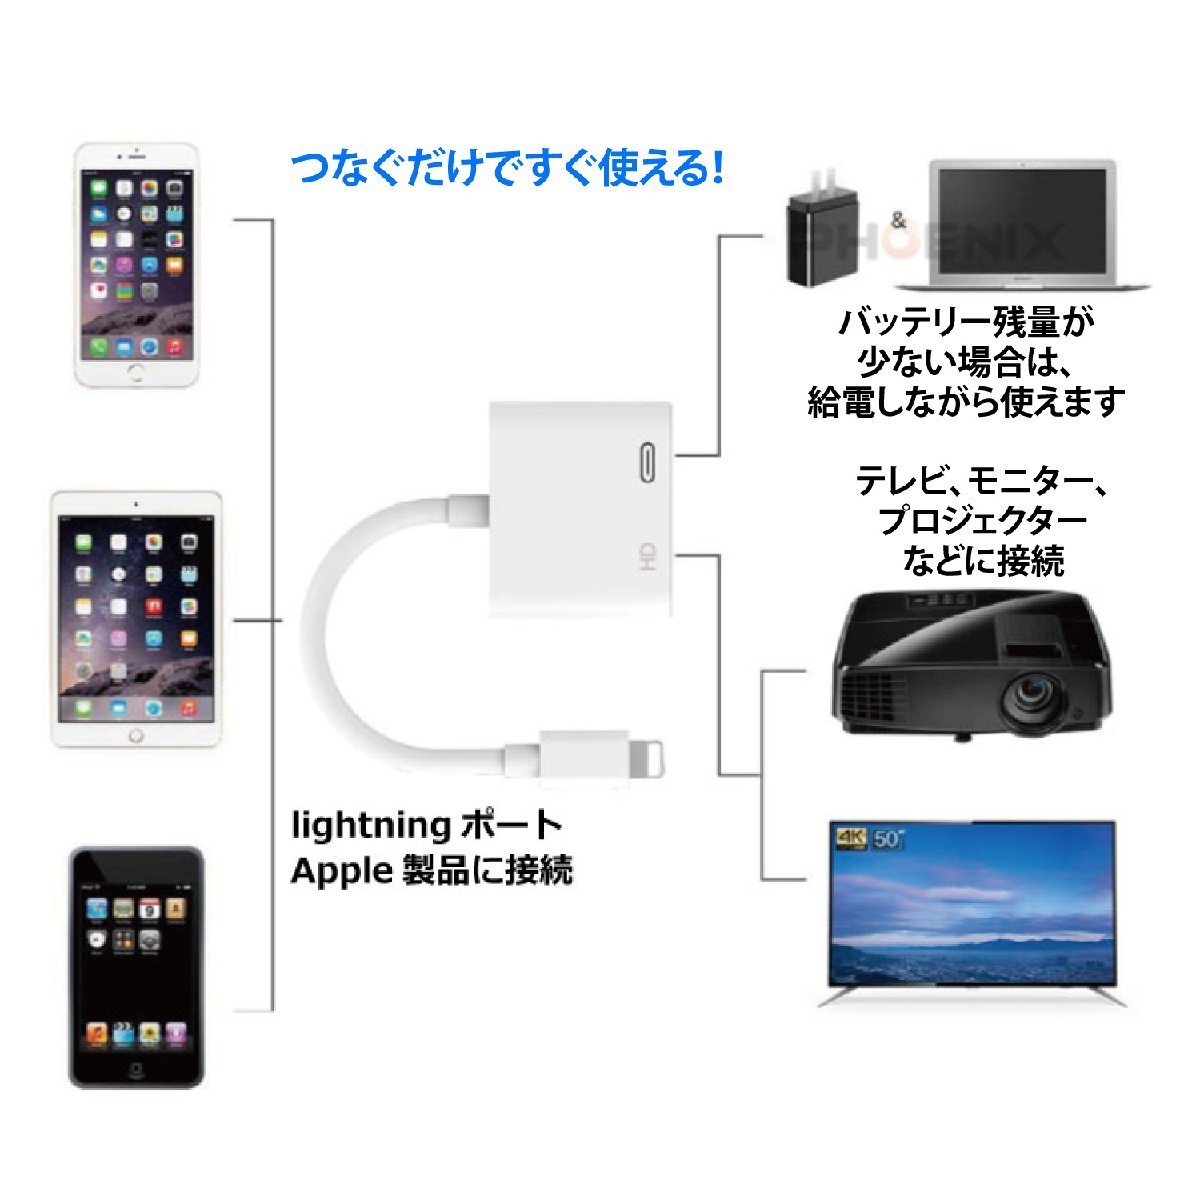 Lightning to HDMI 変換アダプタ 変換ケーブル ライトニング 電源不要 設定不要 iPhone iPad iPodをテレビに出力_画像3